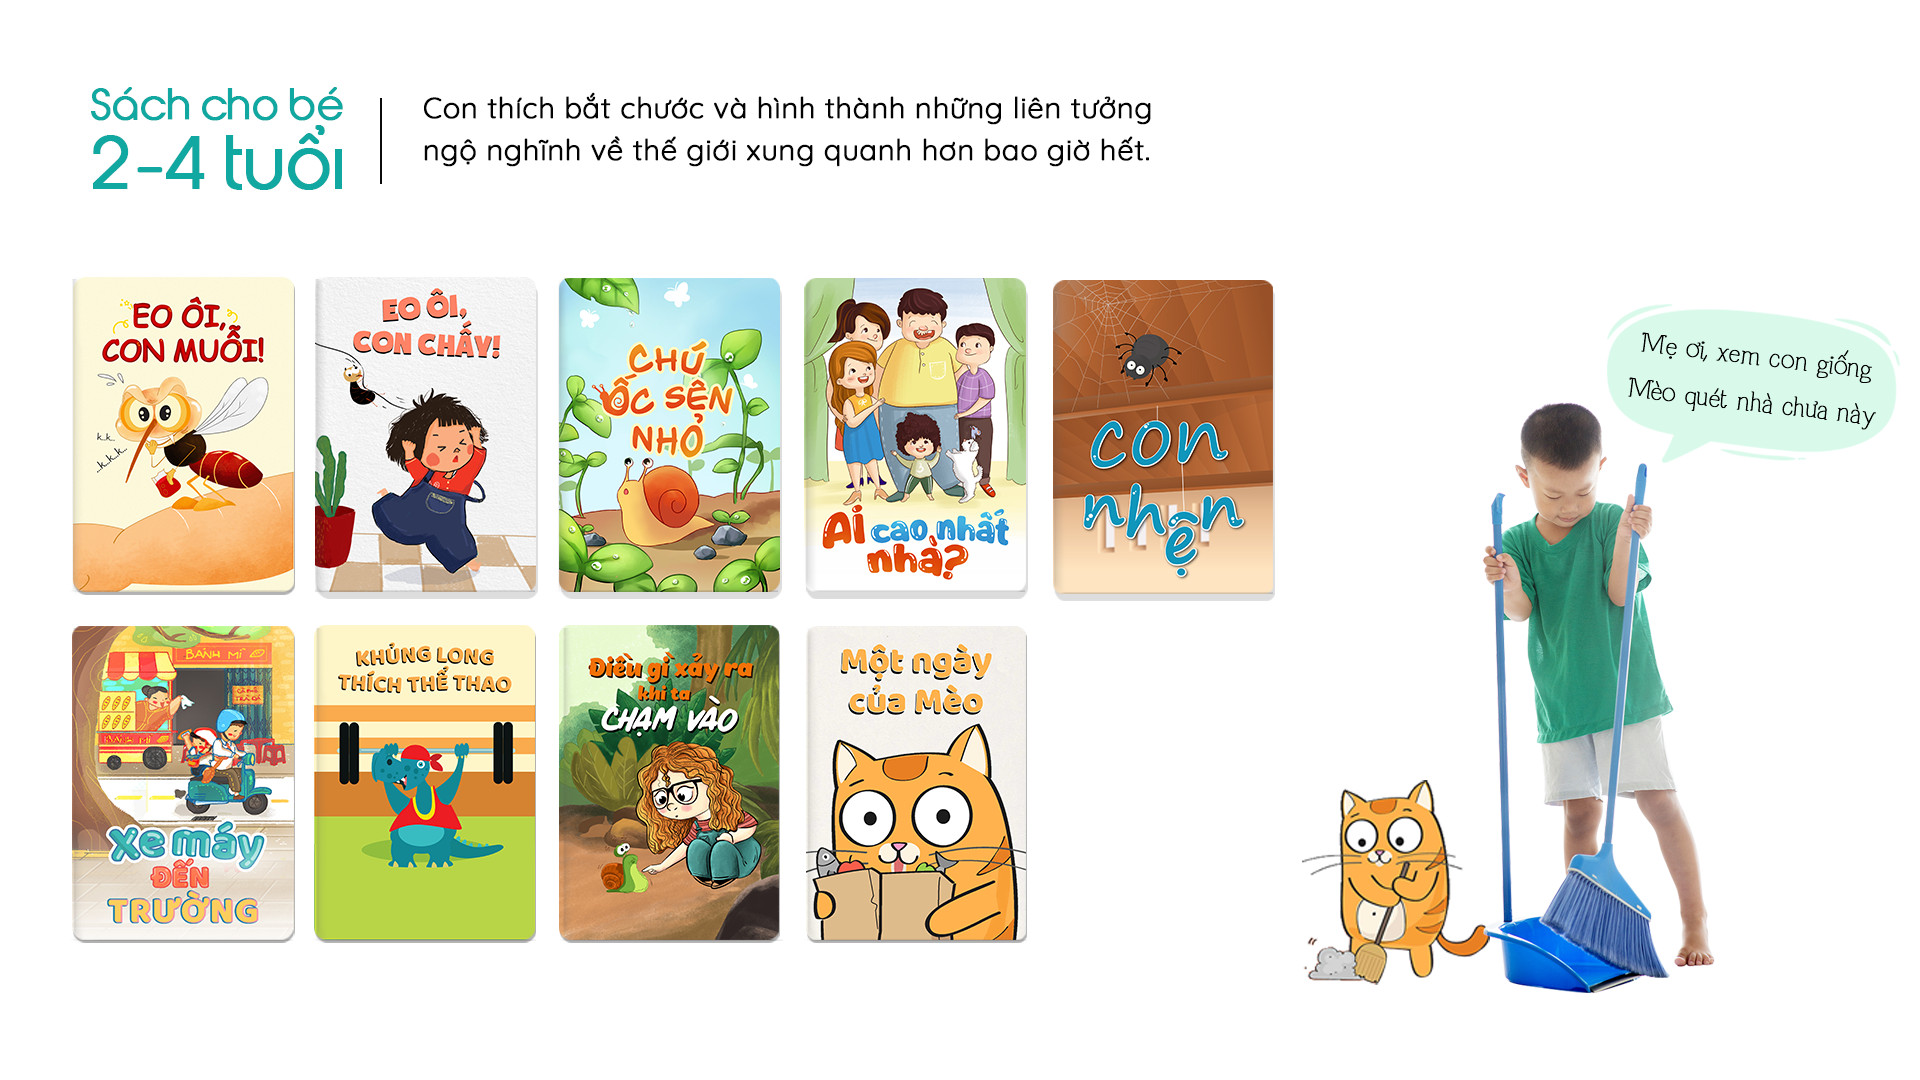 Gói 1 Năm_Ứng dụng Đọc sách dành cho trẻ em Umbalena